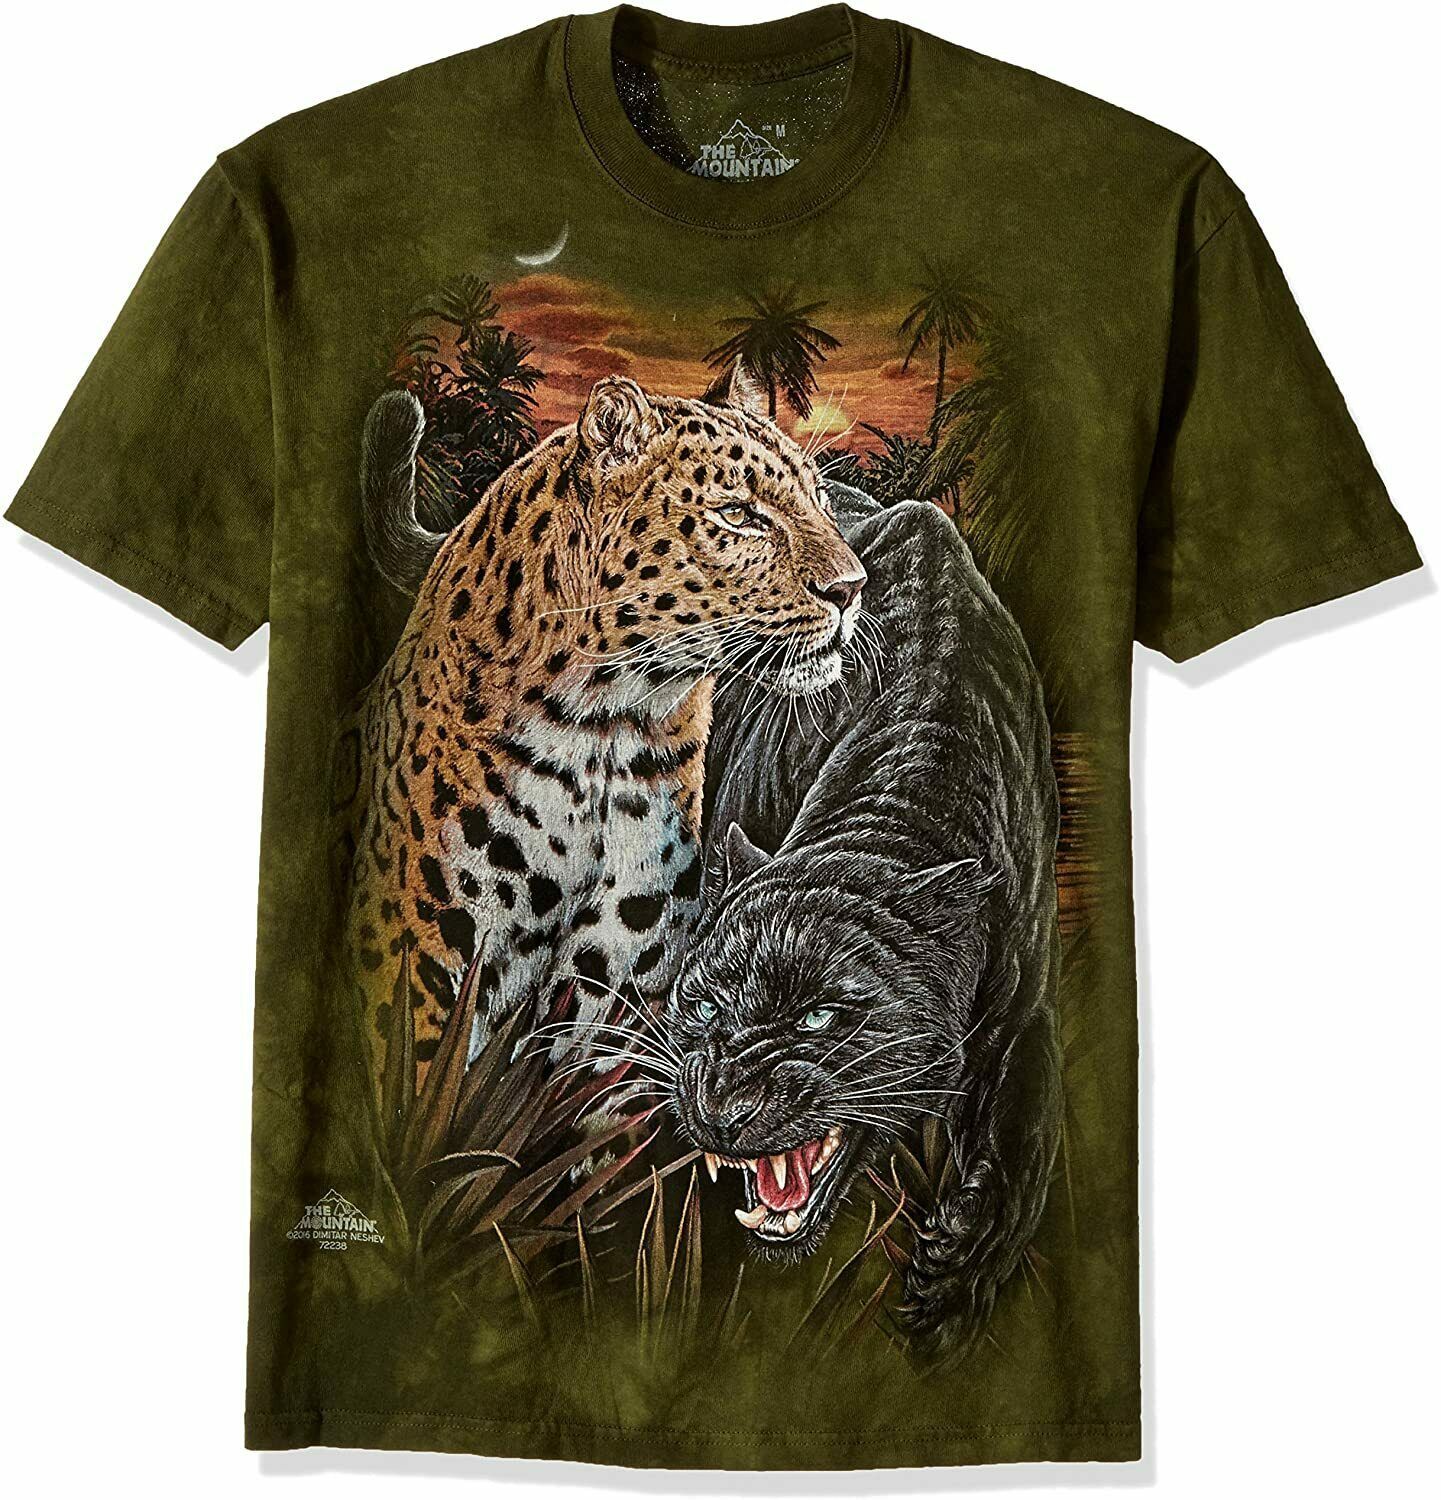 Two Jaguars Panther Tiger King Wild Lynx Cat Green Mountain Animal T-Shirt M-4X